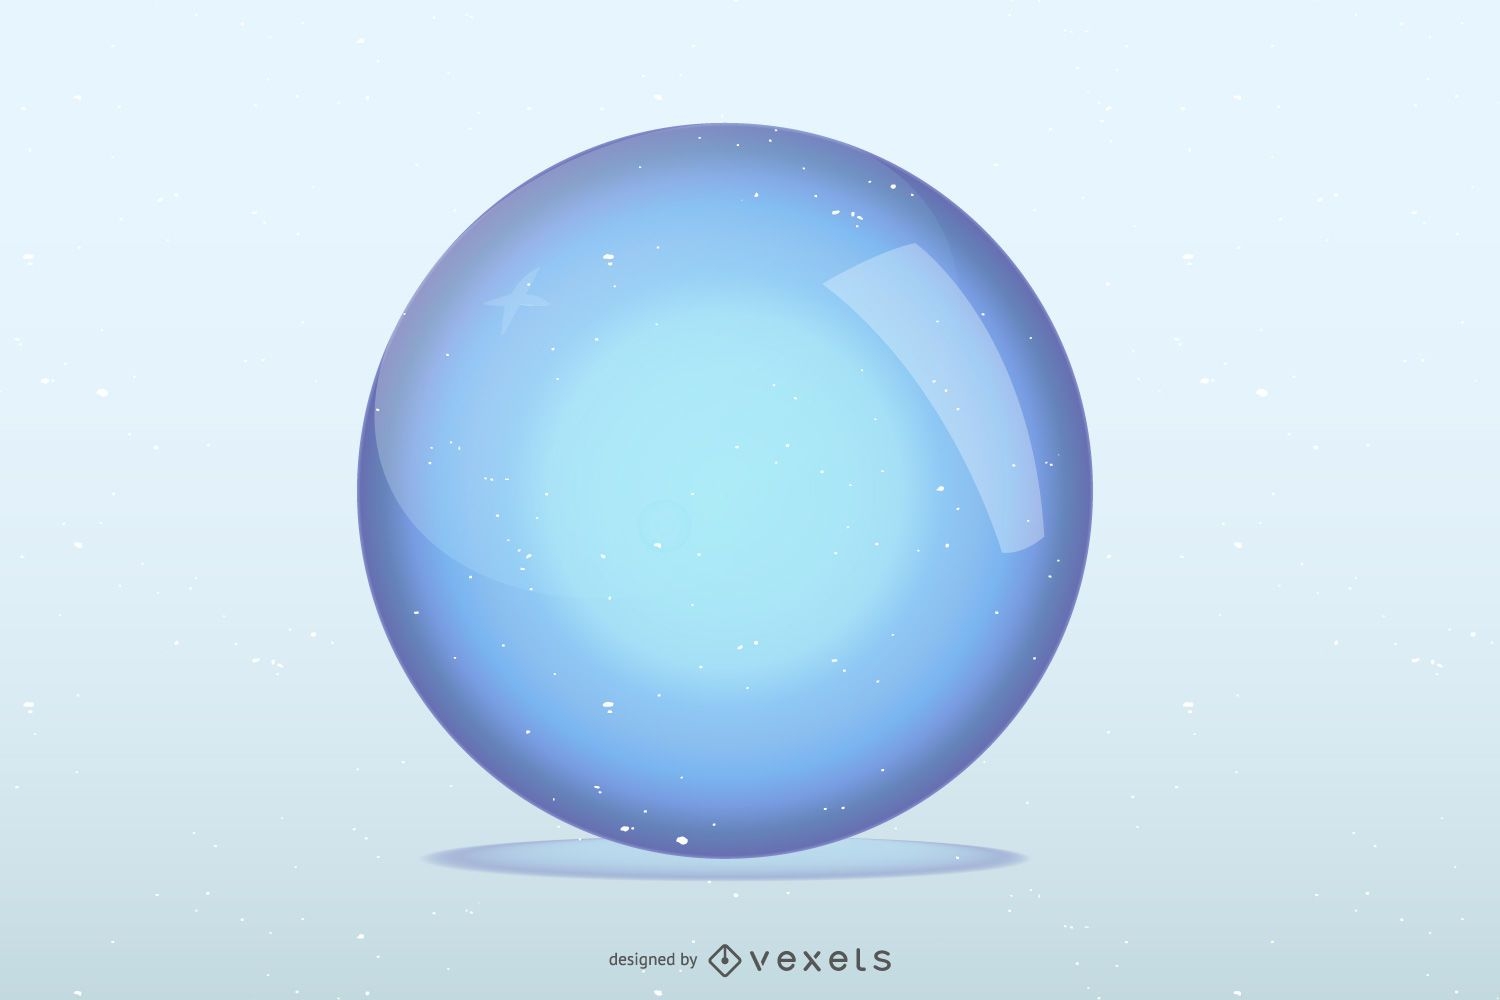 Grande esfera de vidro azul